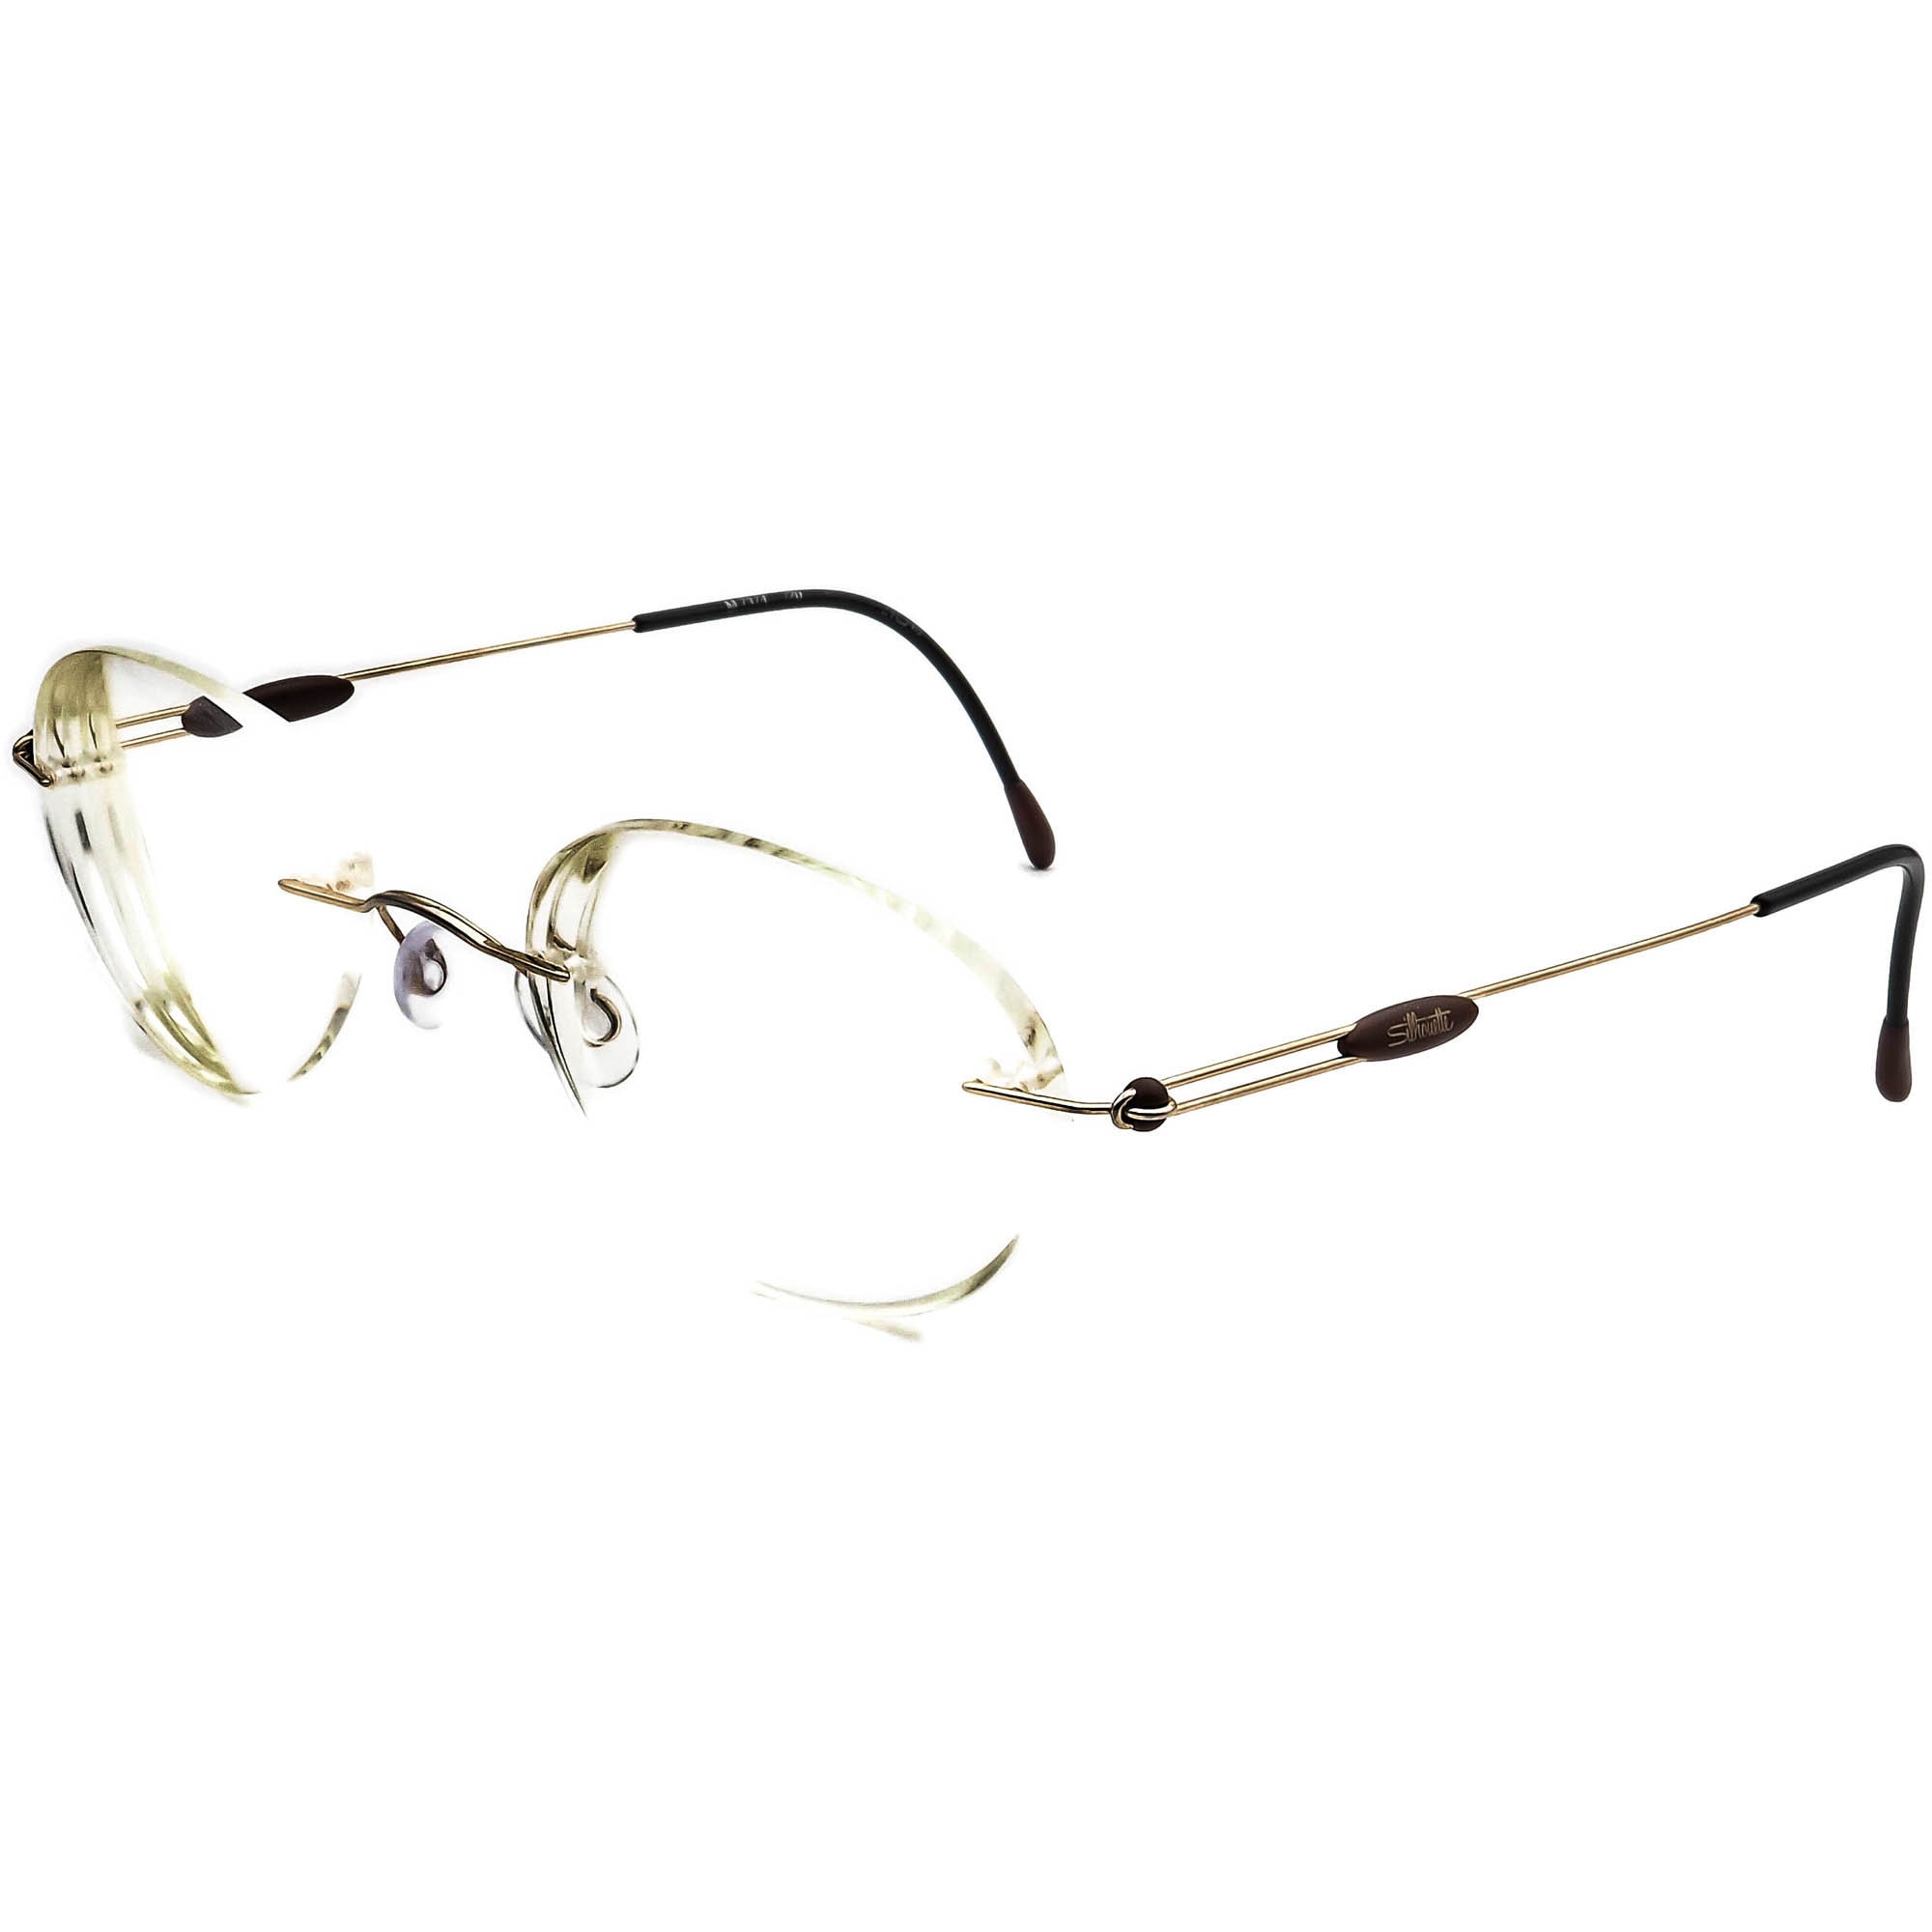 Support lunette pour 1 lunette - SPC-1919130 - Stesha